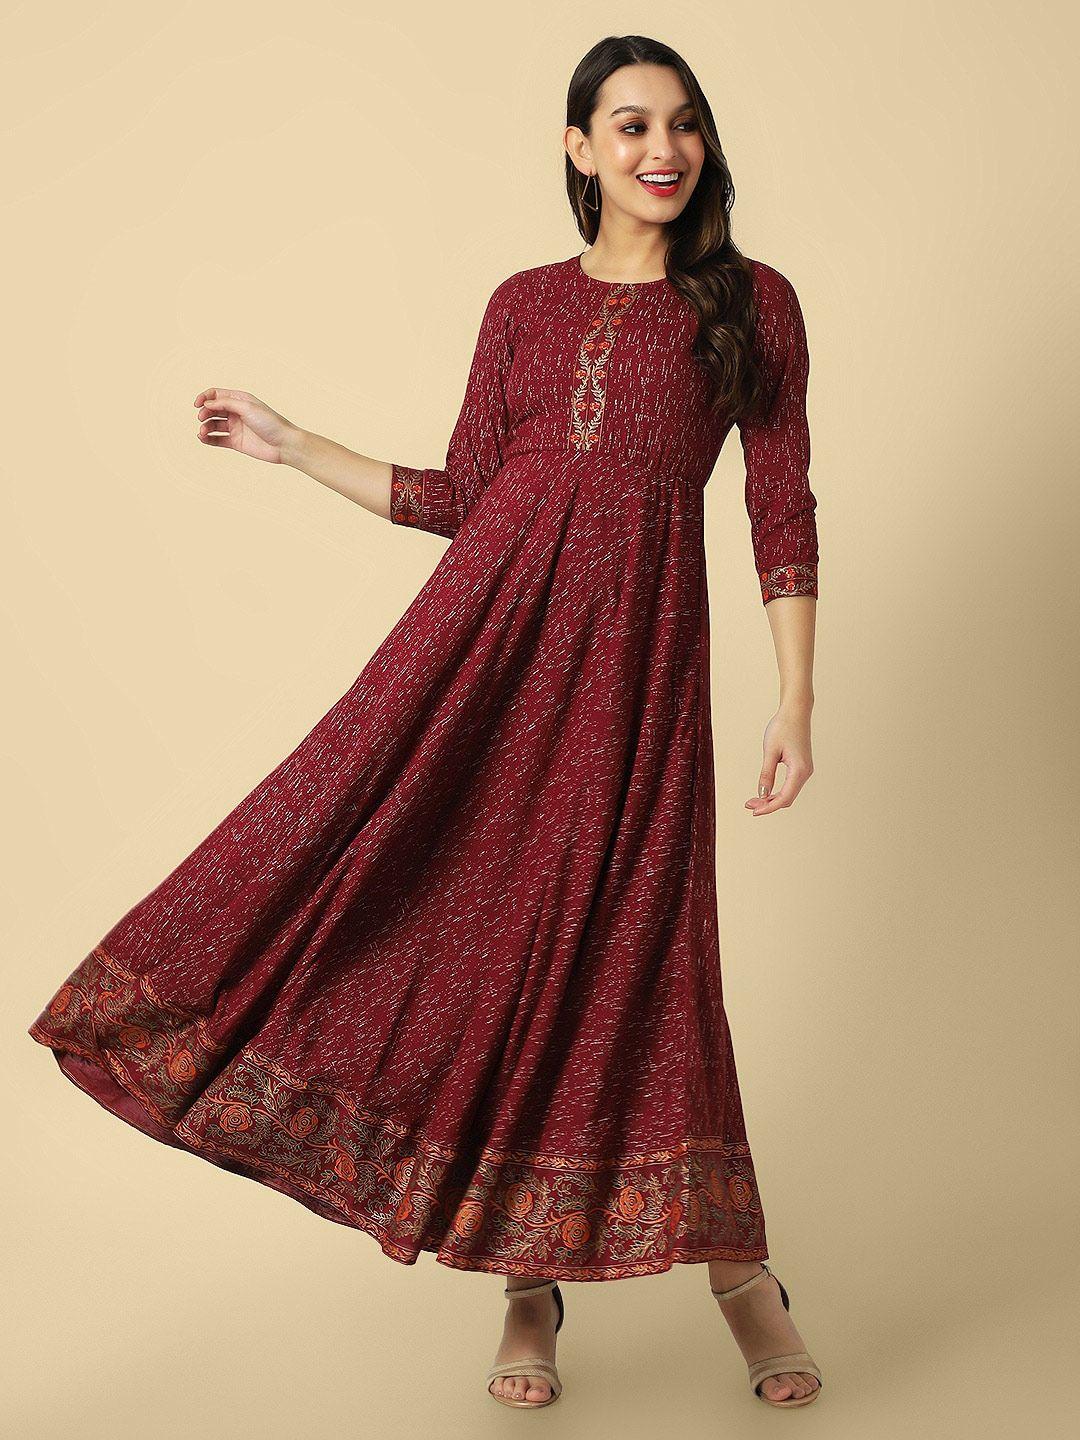 daevish maroon ethnic motifs print ethnic dress